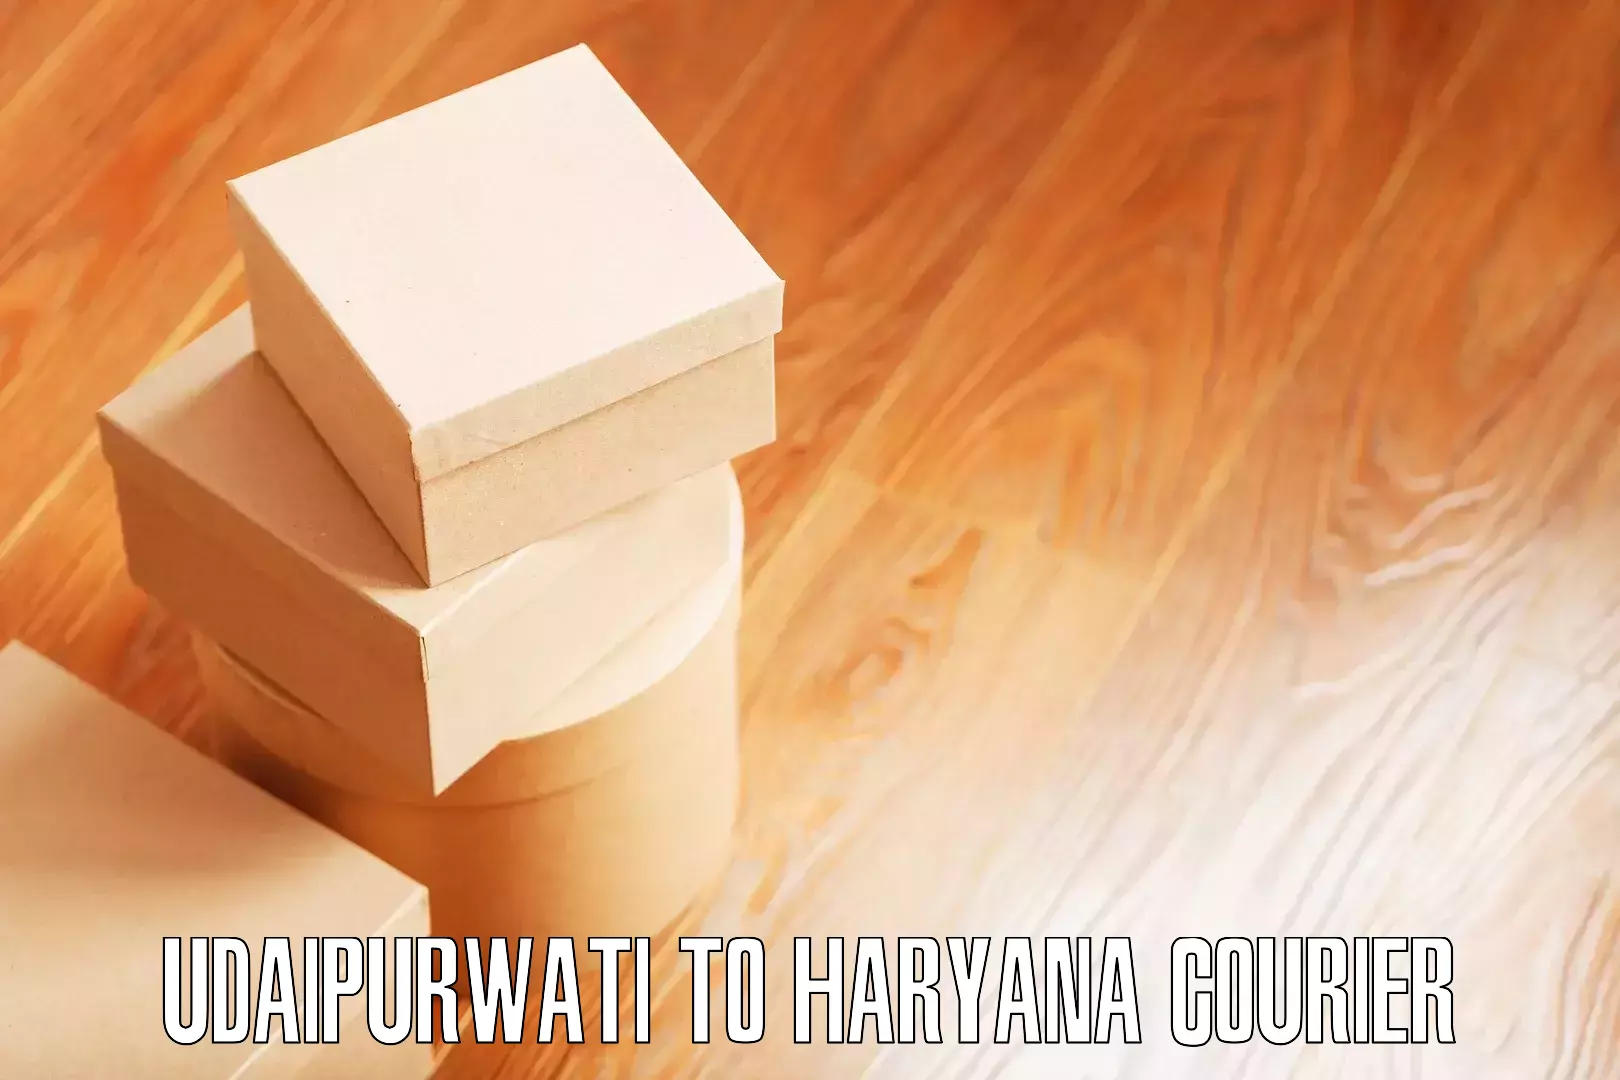 Home goods moving Udaipurwati to Haryana